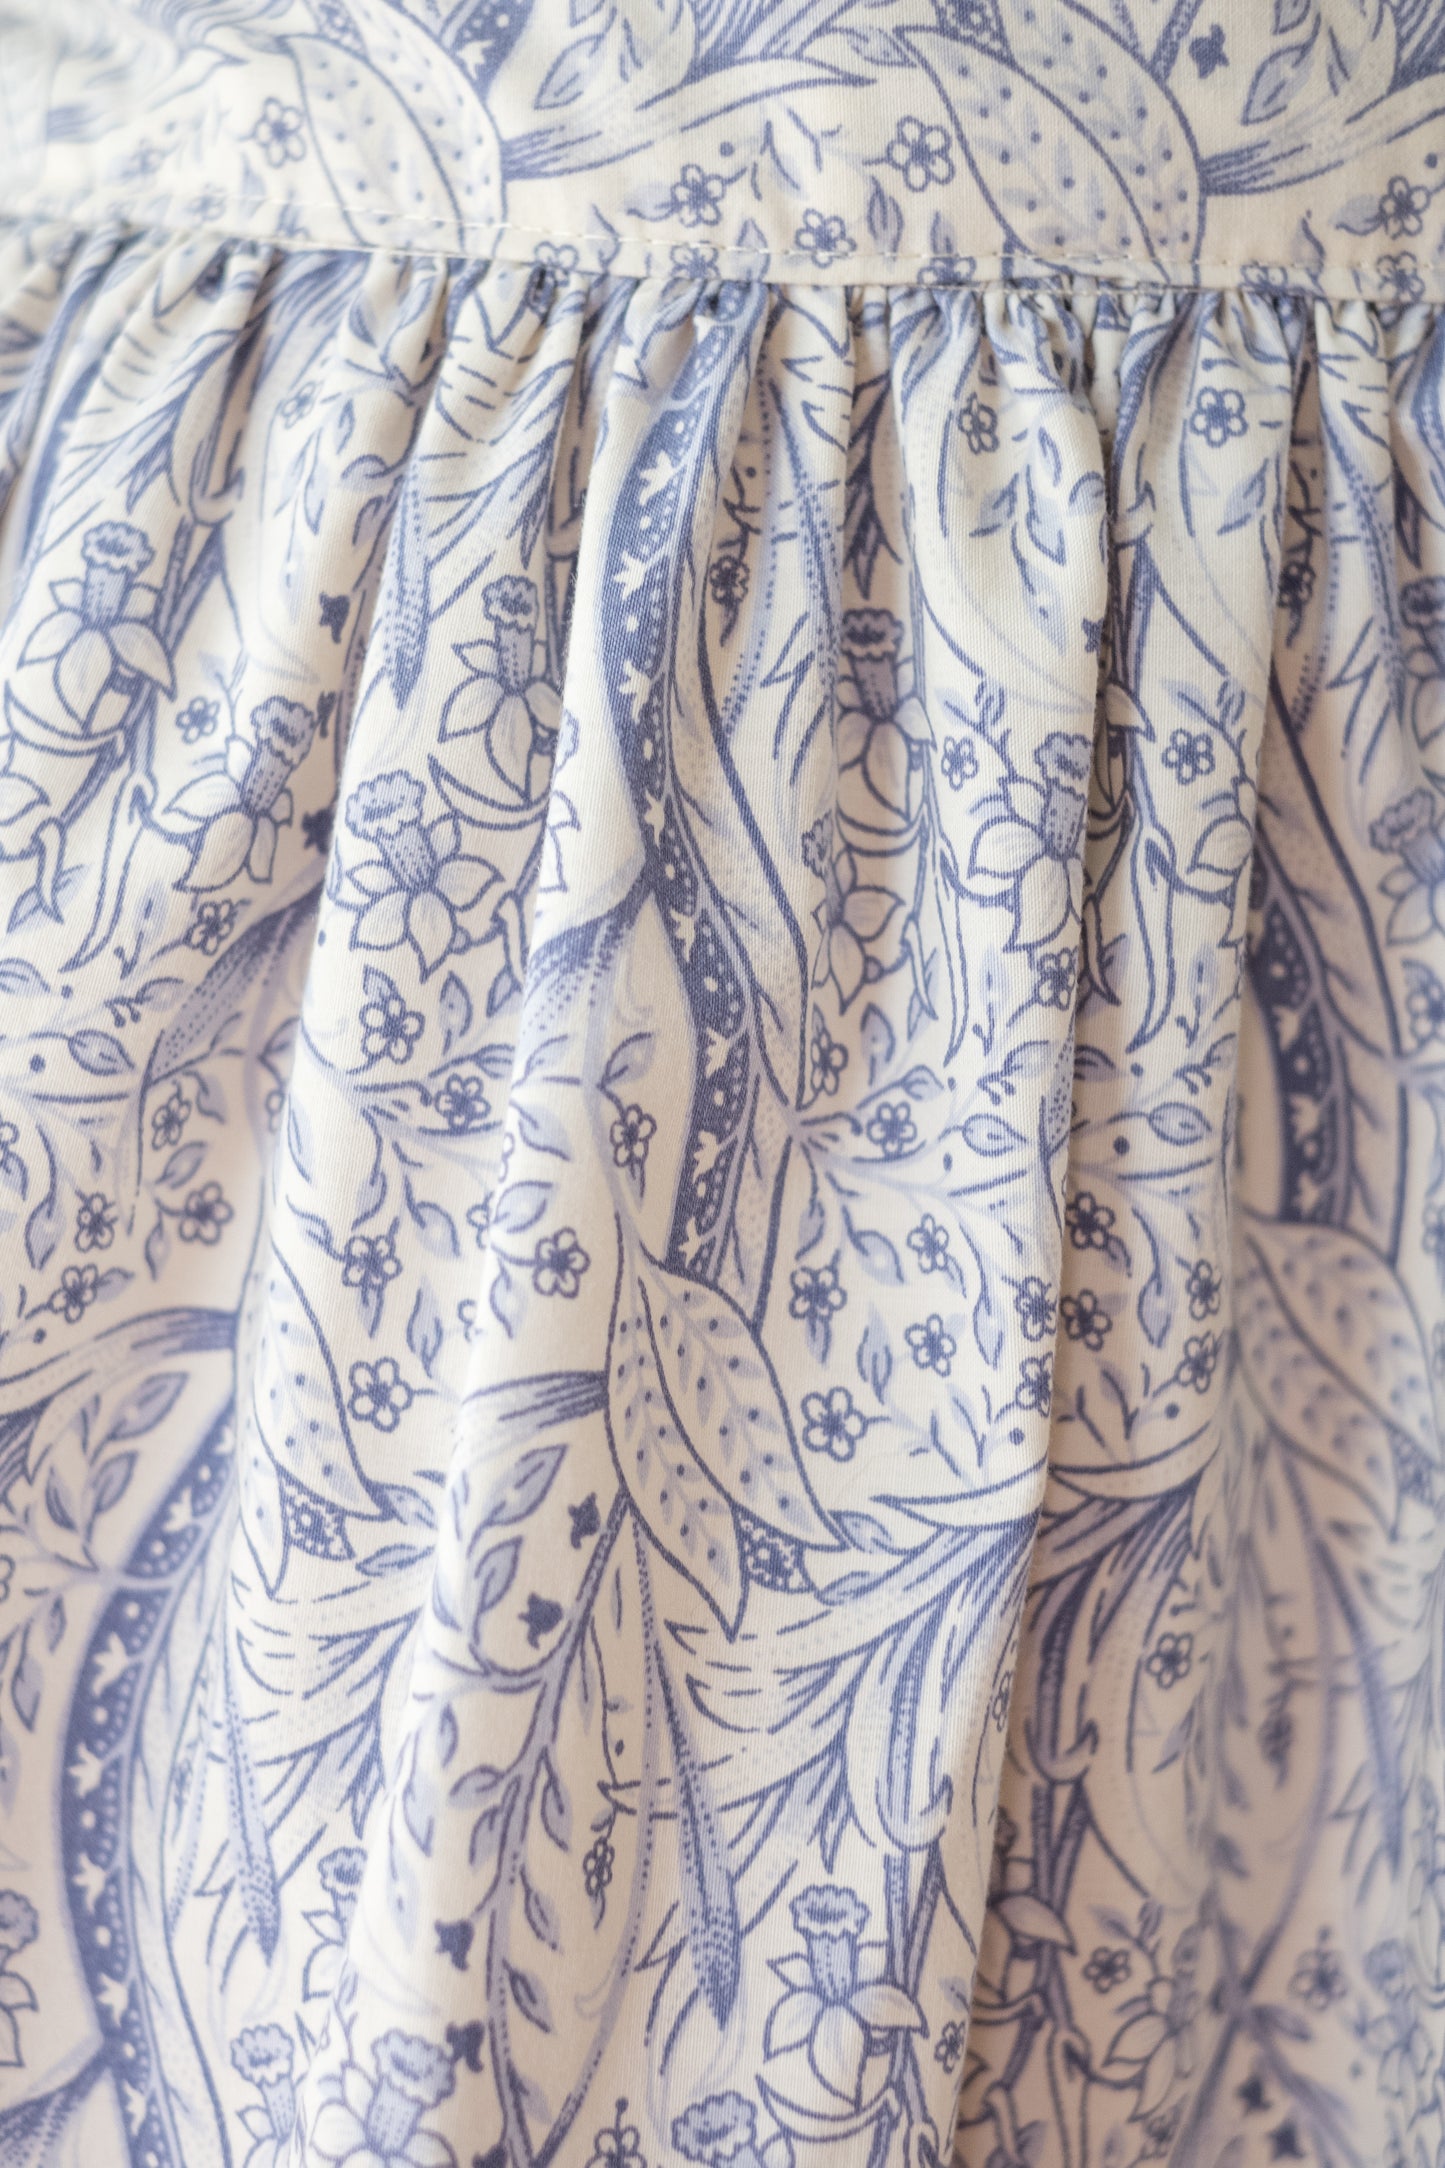 Handmade vintage floral apron - porcelain blue